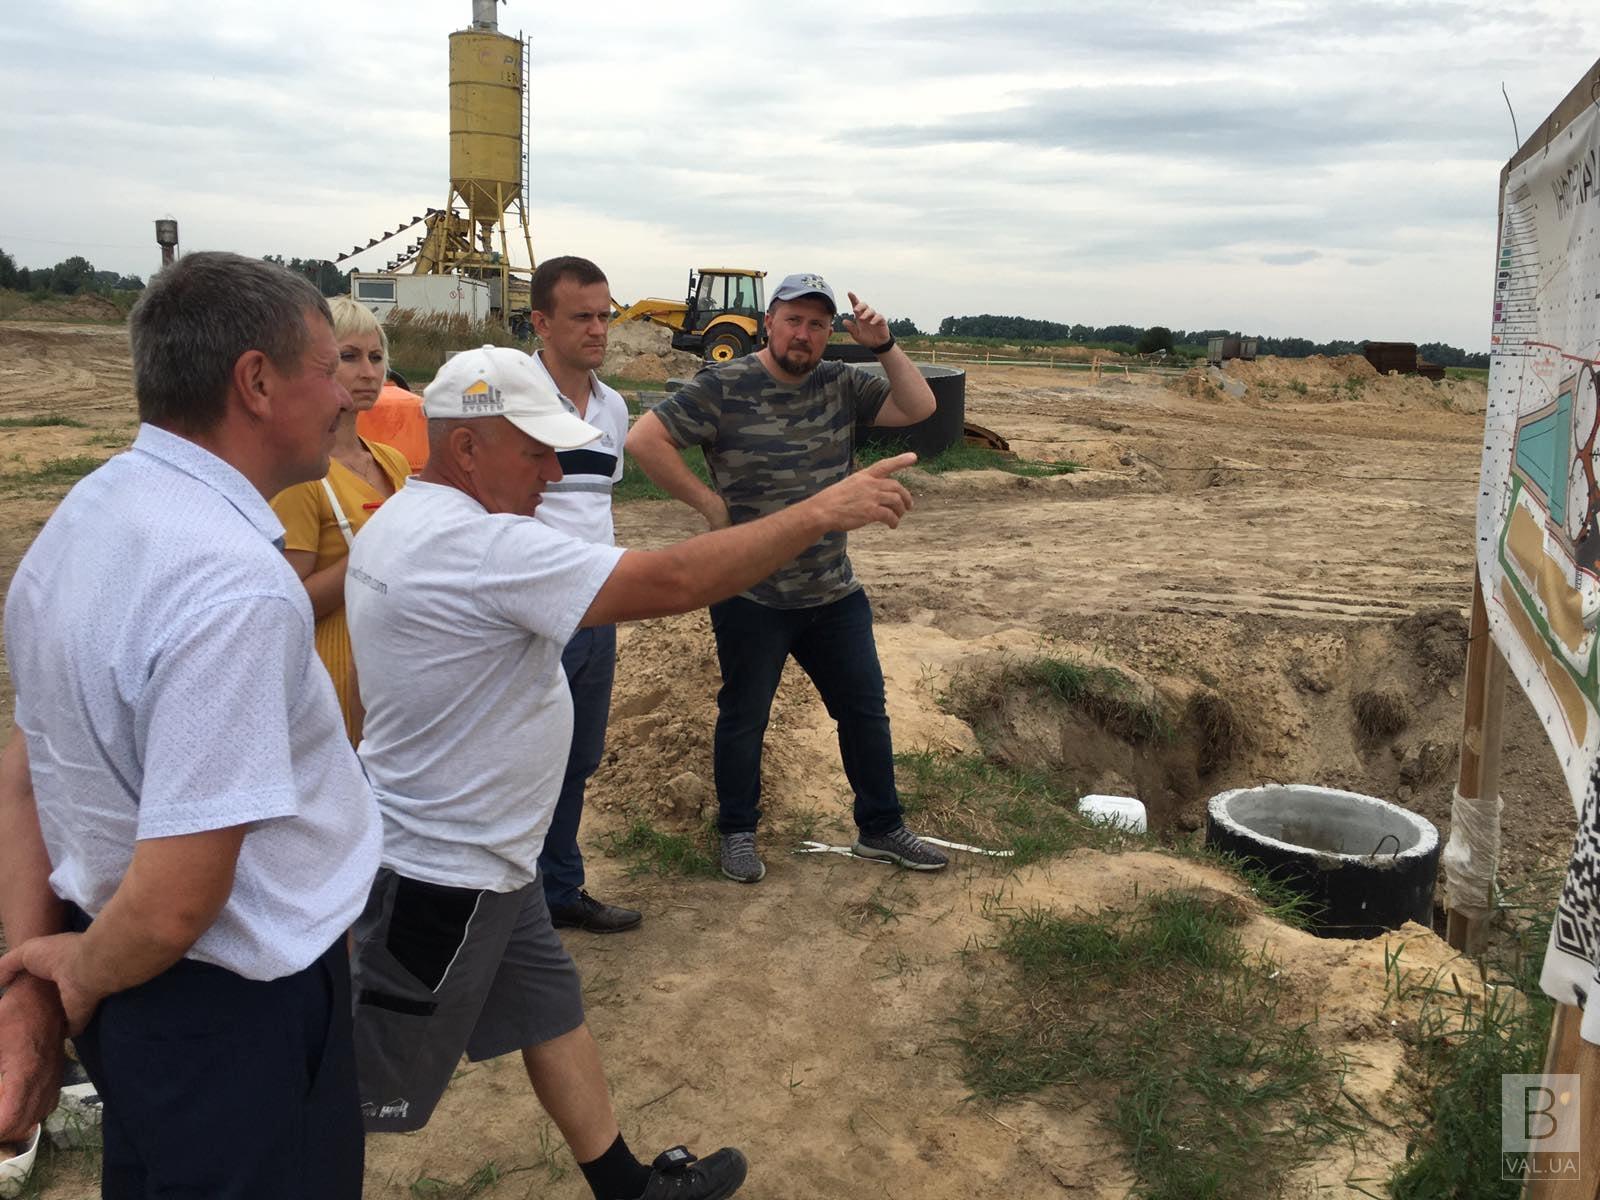 Вироблятимуть енергію з кукурудзи - на Чернігівщині будують біогазову установку